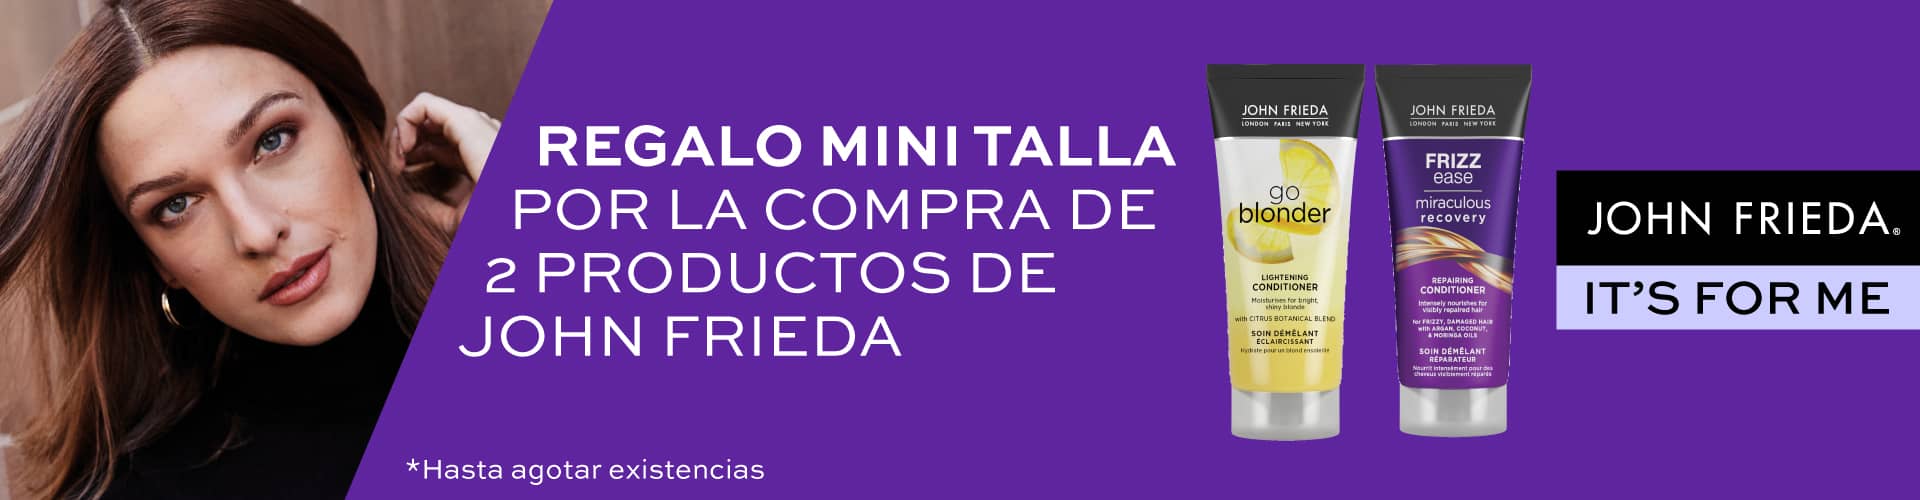 John Frieda | Promoción Regalo Minitalla | Perfumería Prieto